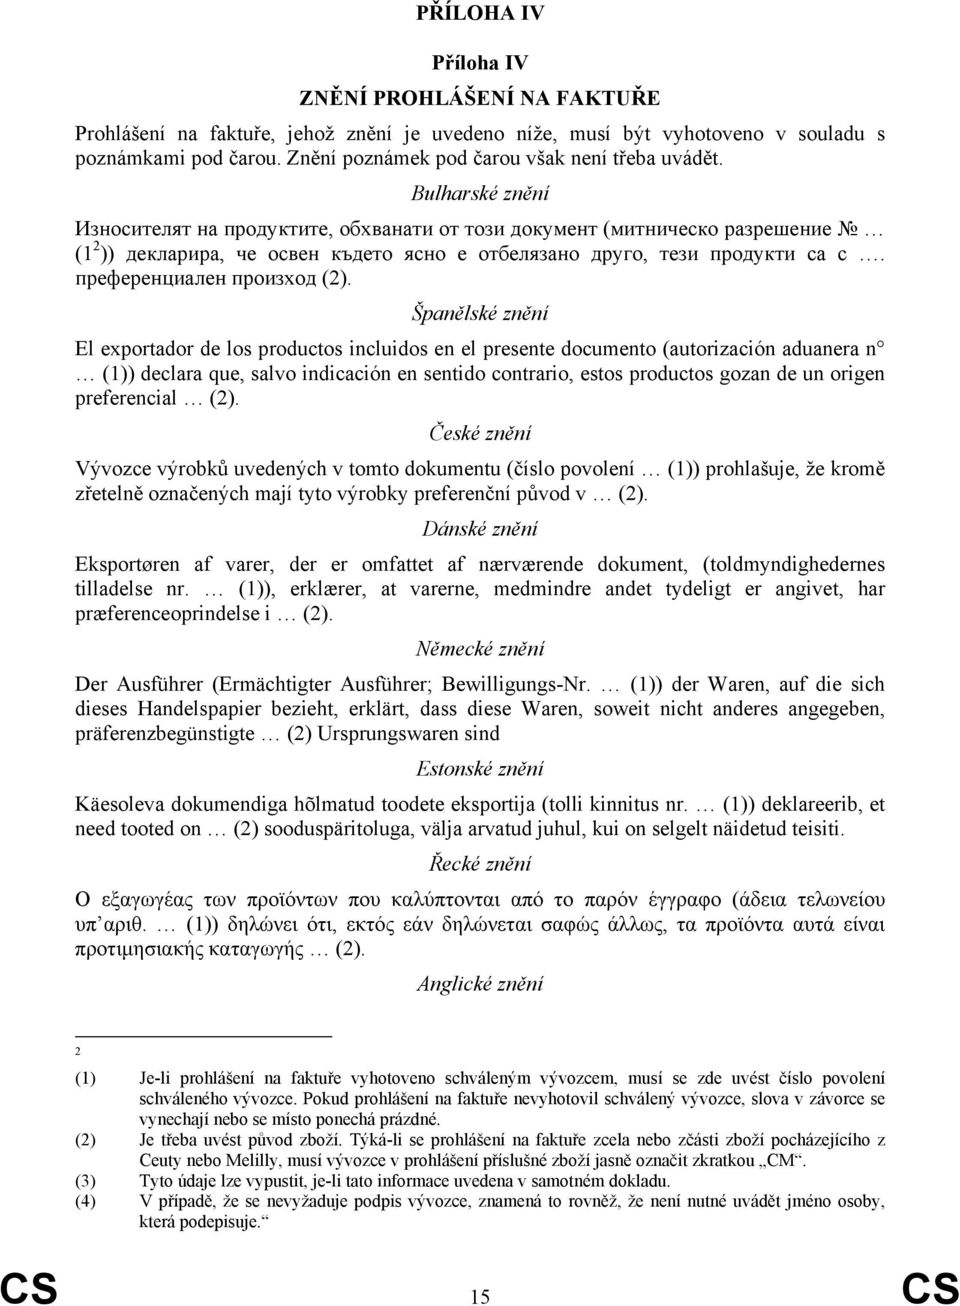 Bulharské znění Износителят на продуктите, обхванати от този документ (митническо разрешение (1 2 )) декларира, че освен където ясно е отбелязано друго, тези продукти са с.